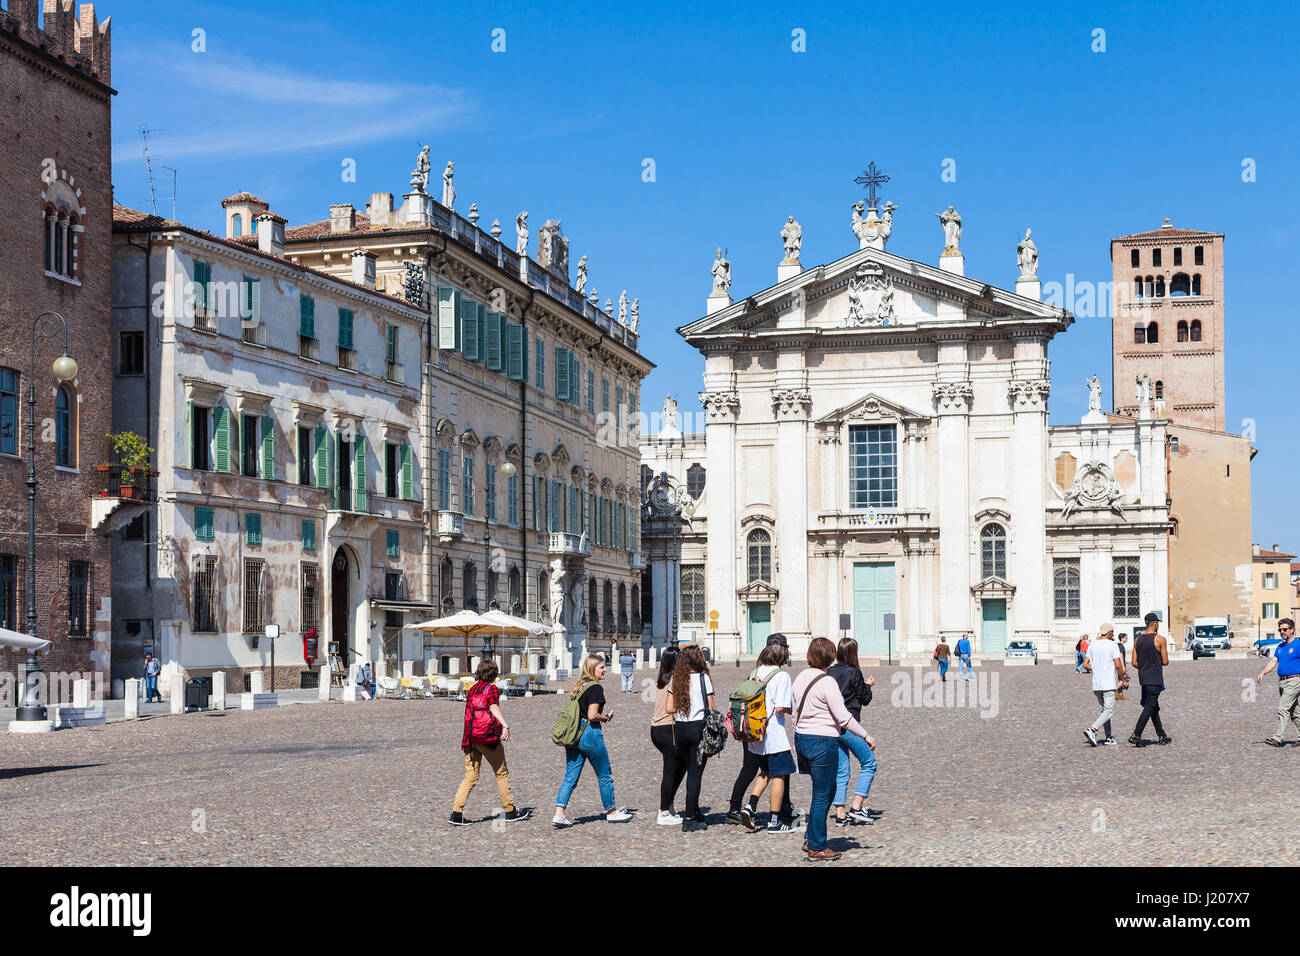 MANTUA, Italien - 31. März 2017: Touristen und Mantova Dom auf Piazza Sordello (Piazza San Pietro) in Mantua. Die heutige Kathedrale wurde rebui Stockfoto